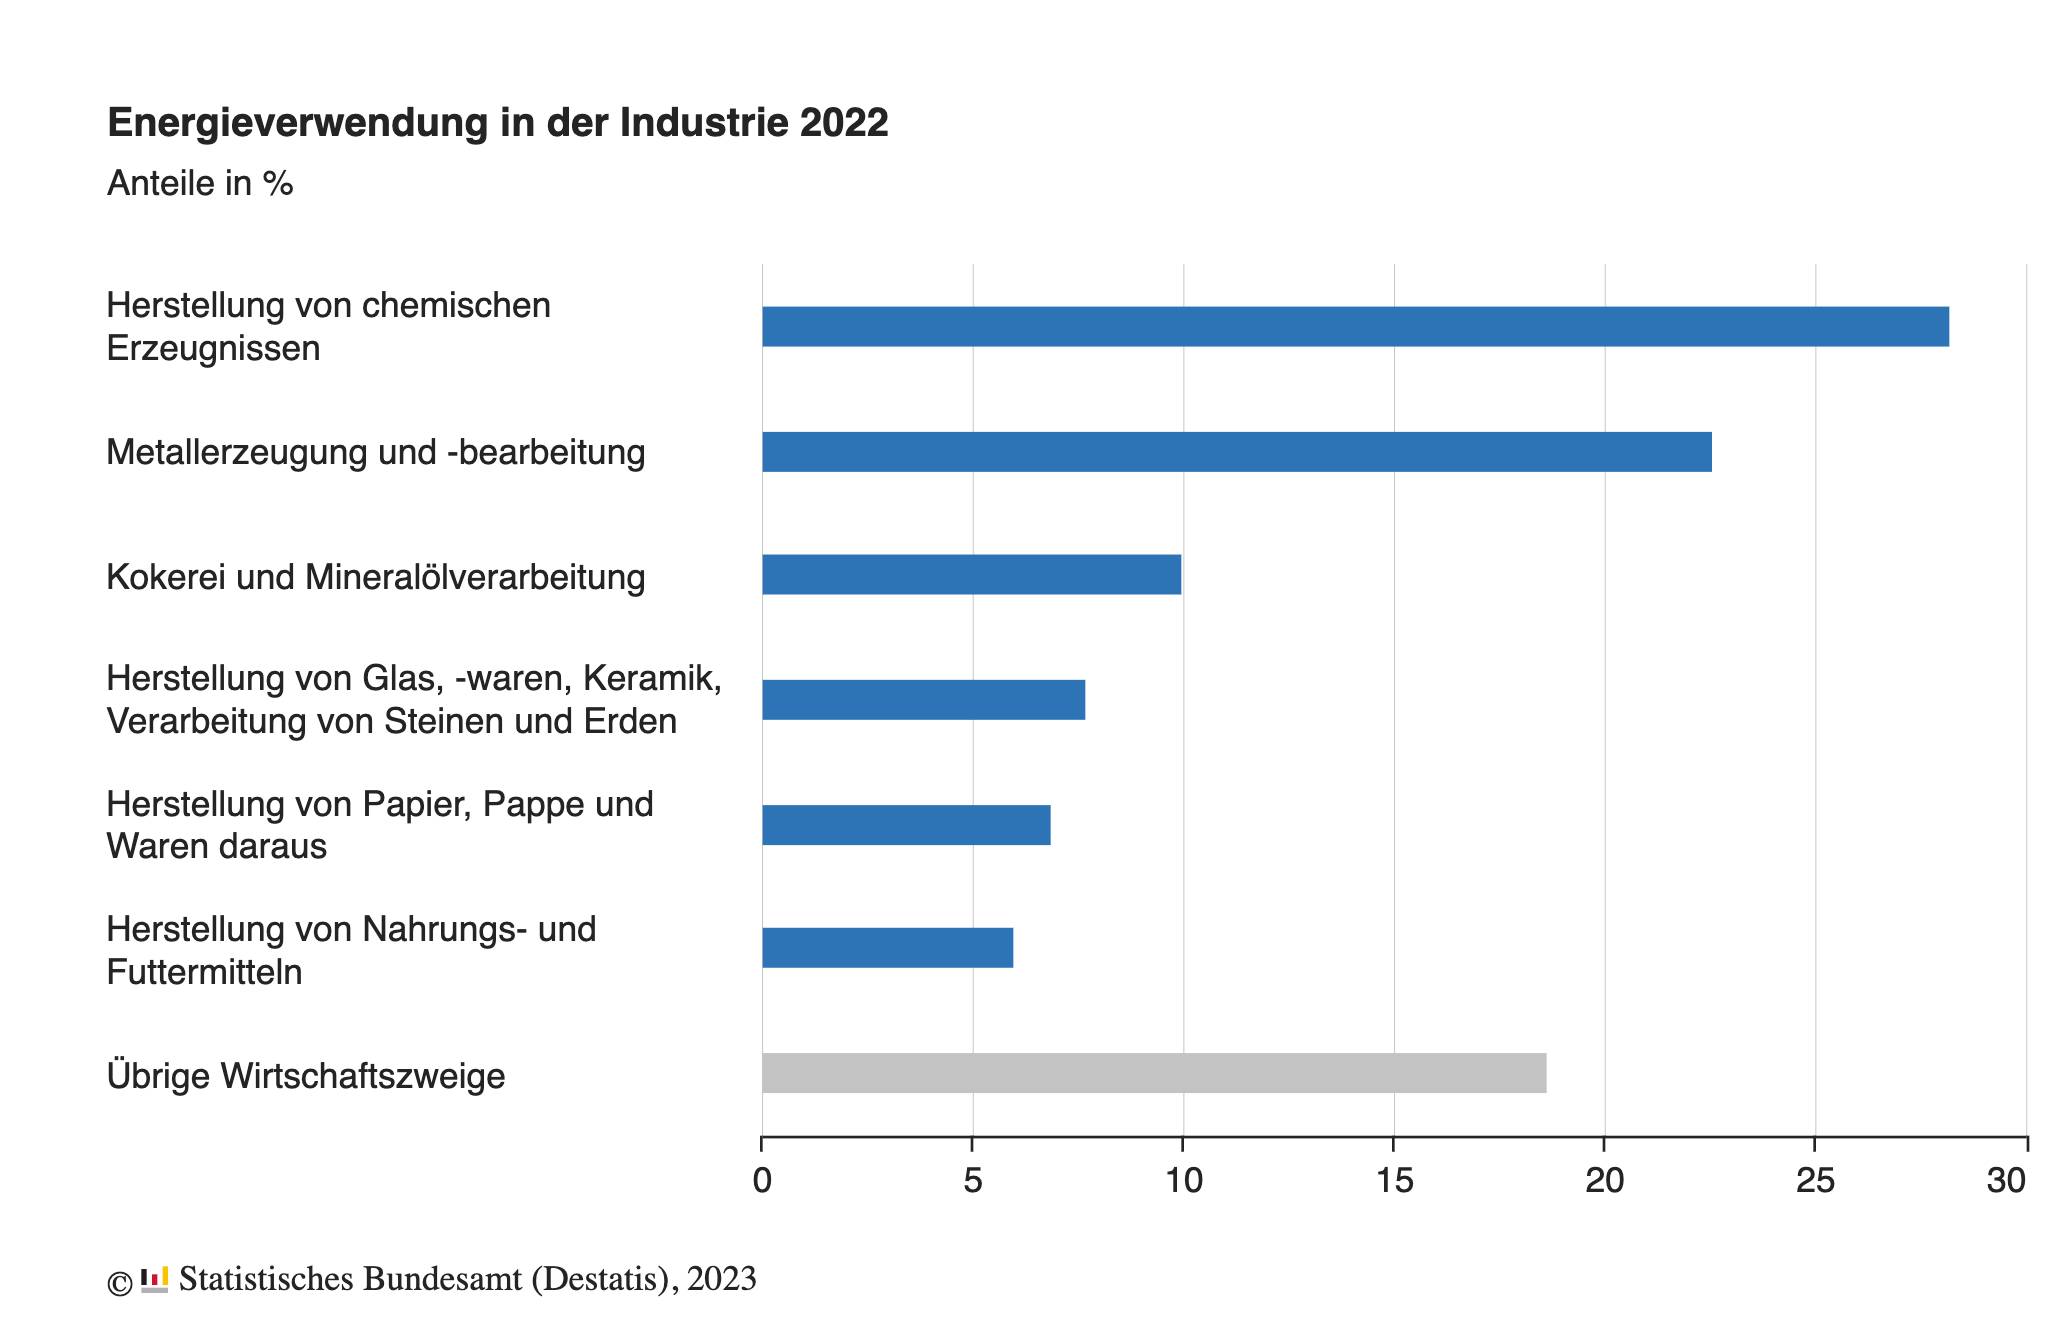 Energieverbrauch der deutschen Industrie im Jahr 2022